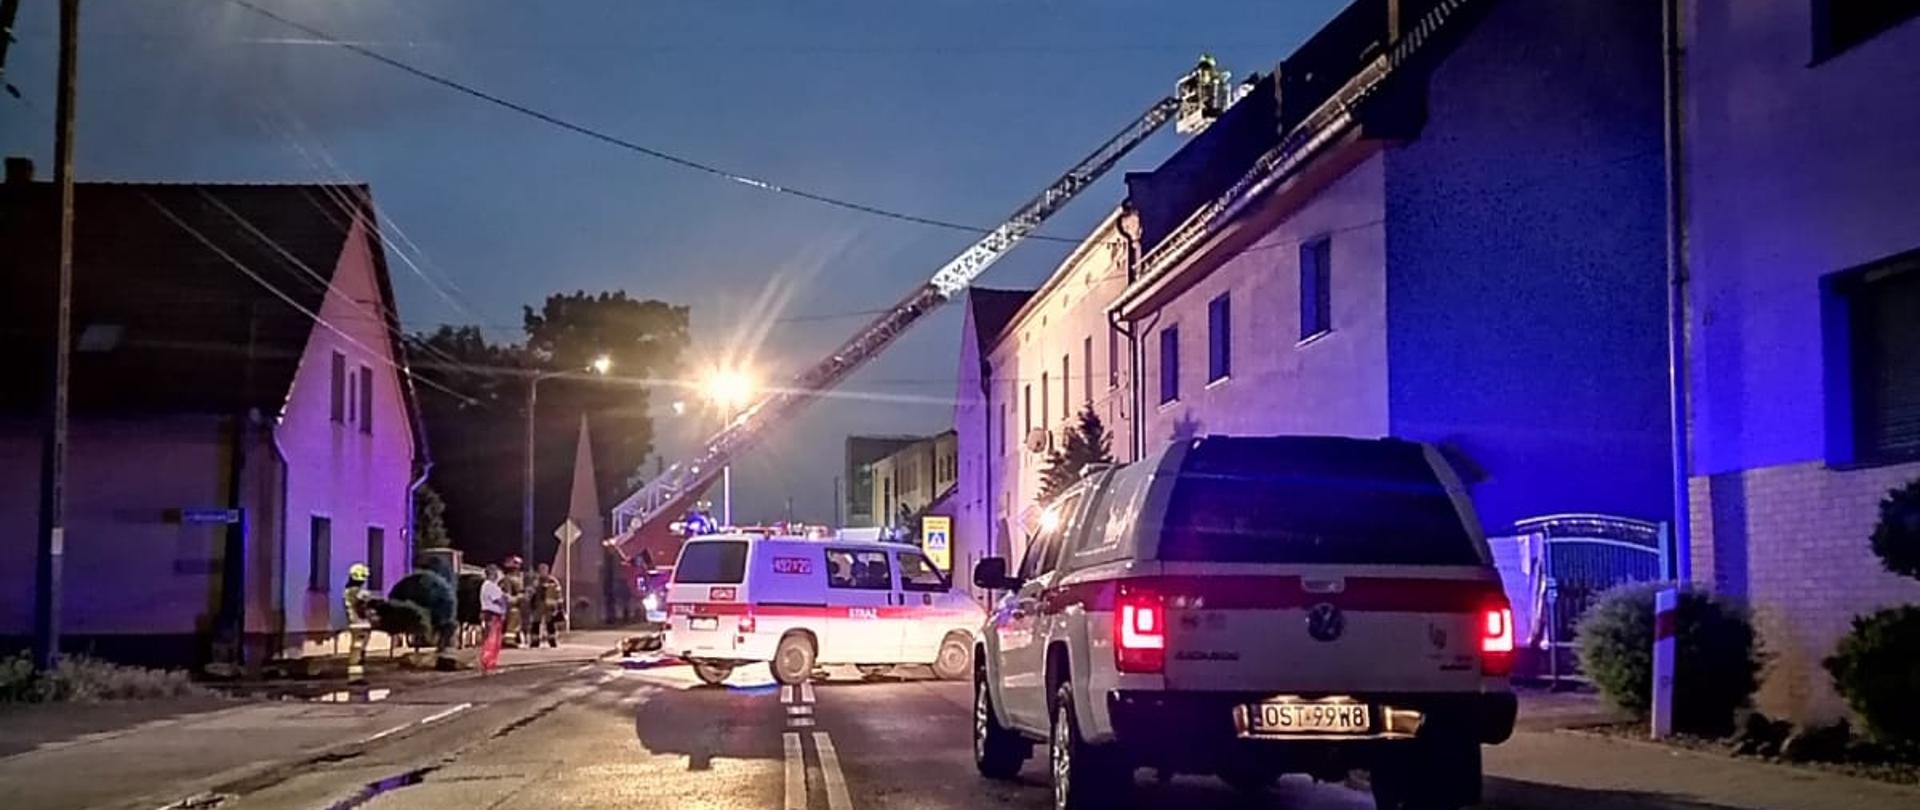 Zdjęcie przedstawia dwa samochody pożarnicze oraz drabinę pożarniczą przy zabezpieczaniu uszkodzonego dachu.